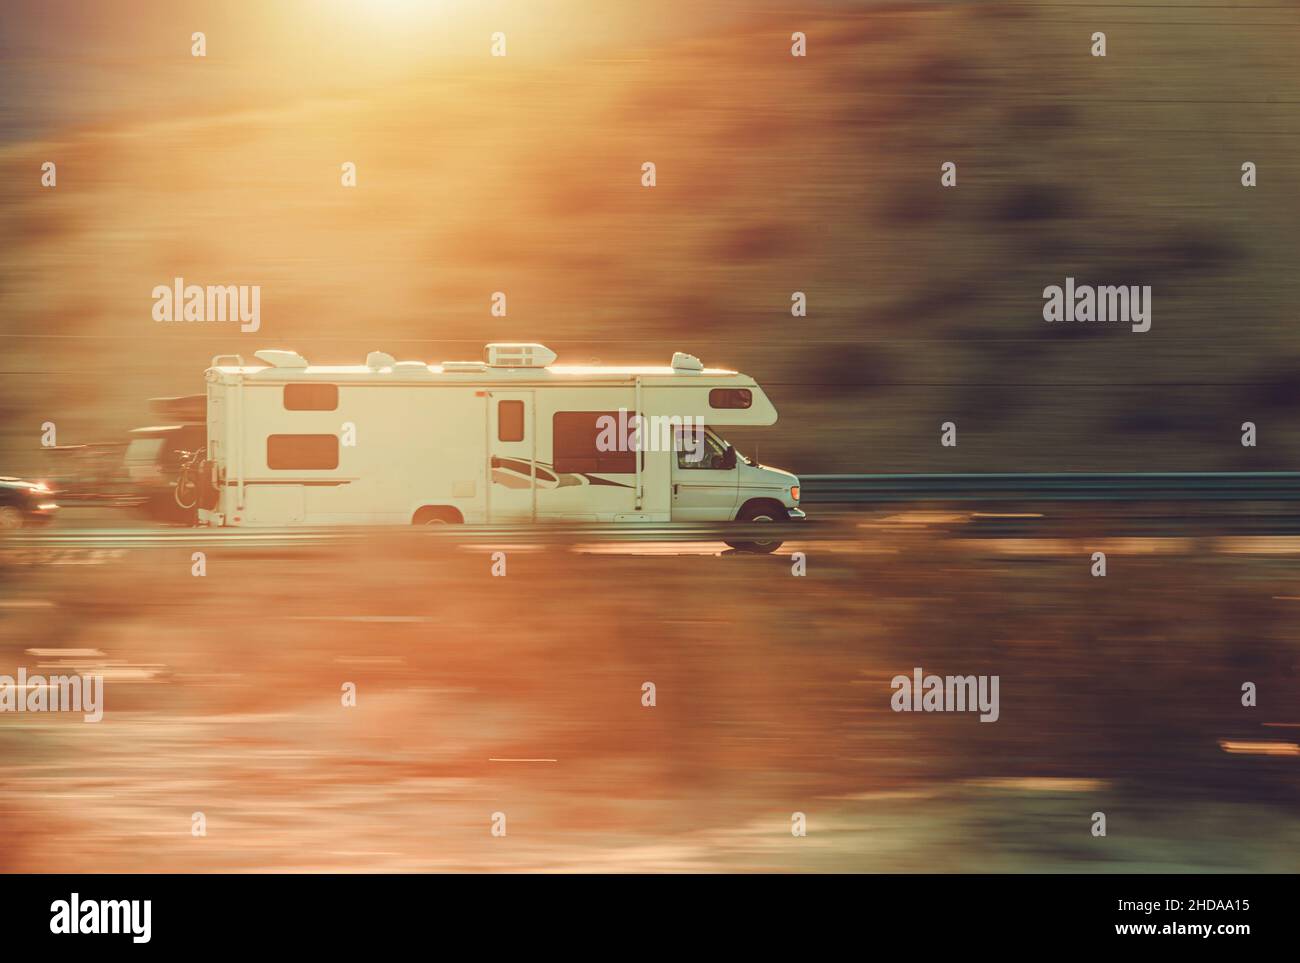 Vitesse d'un camping-car de classe C sur une autoroute avec flou de mouvement.Véhicules récréatifs et thème Camping. Banque D'Images